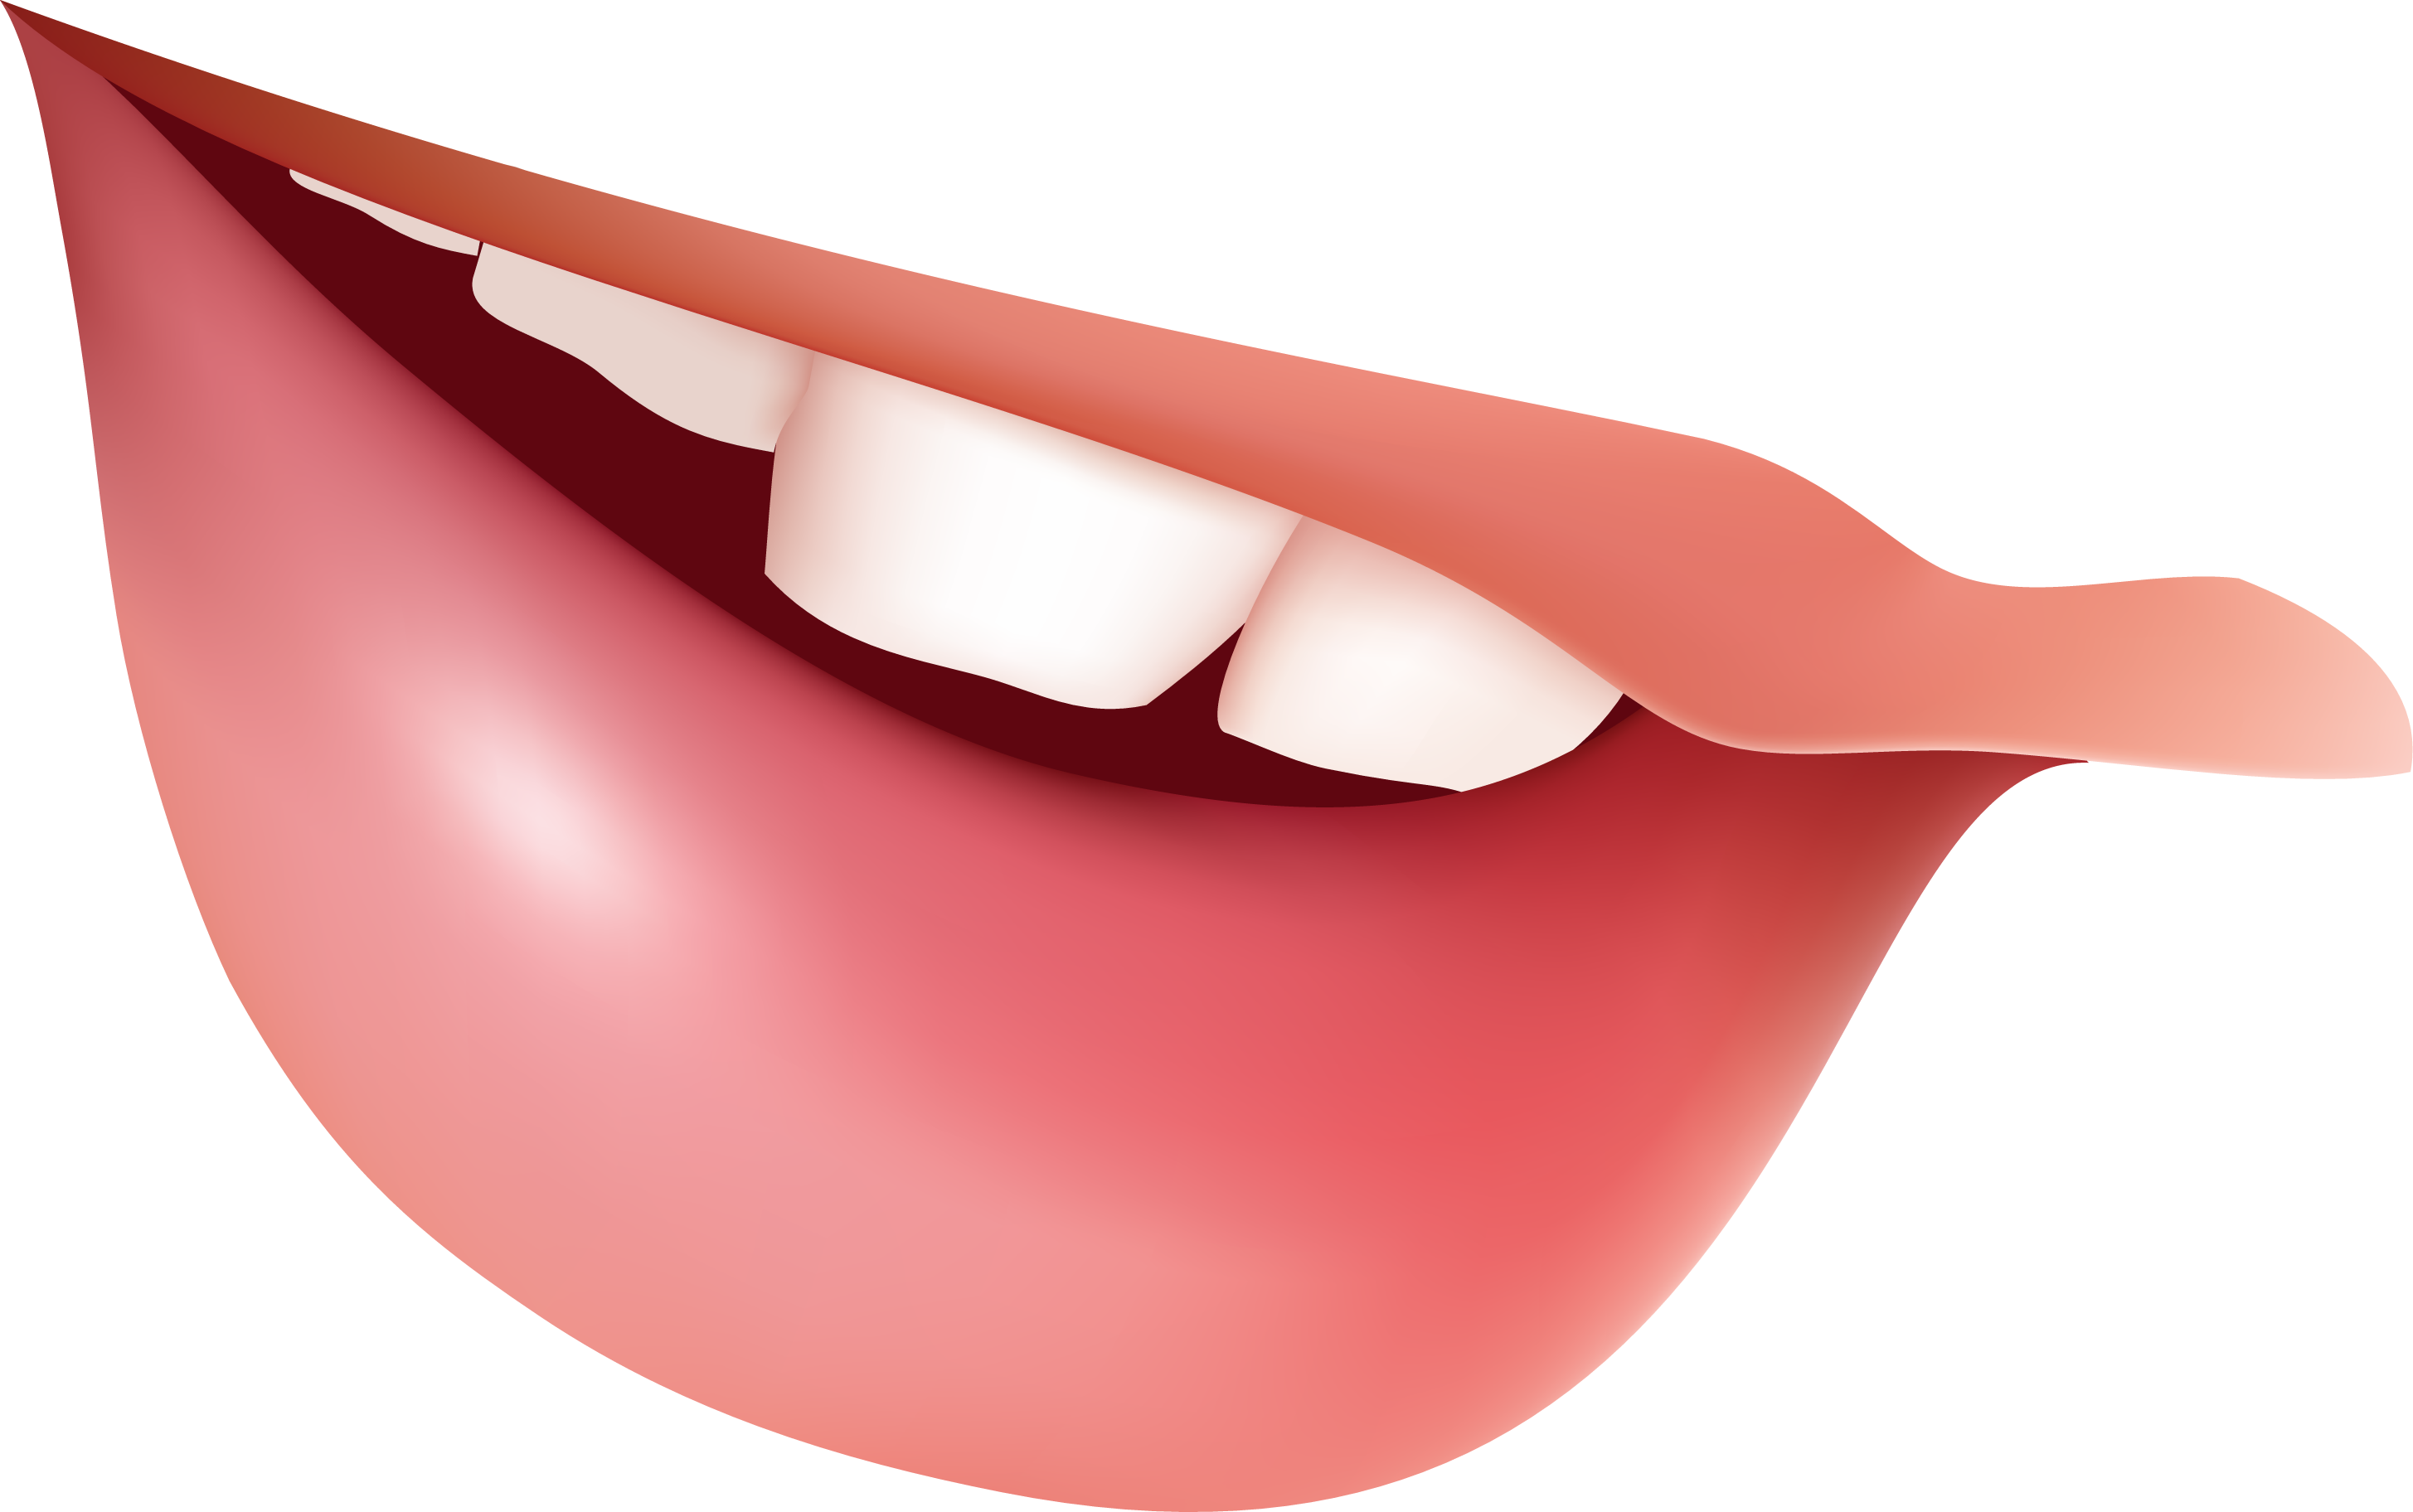 Teeth PNG image